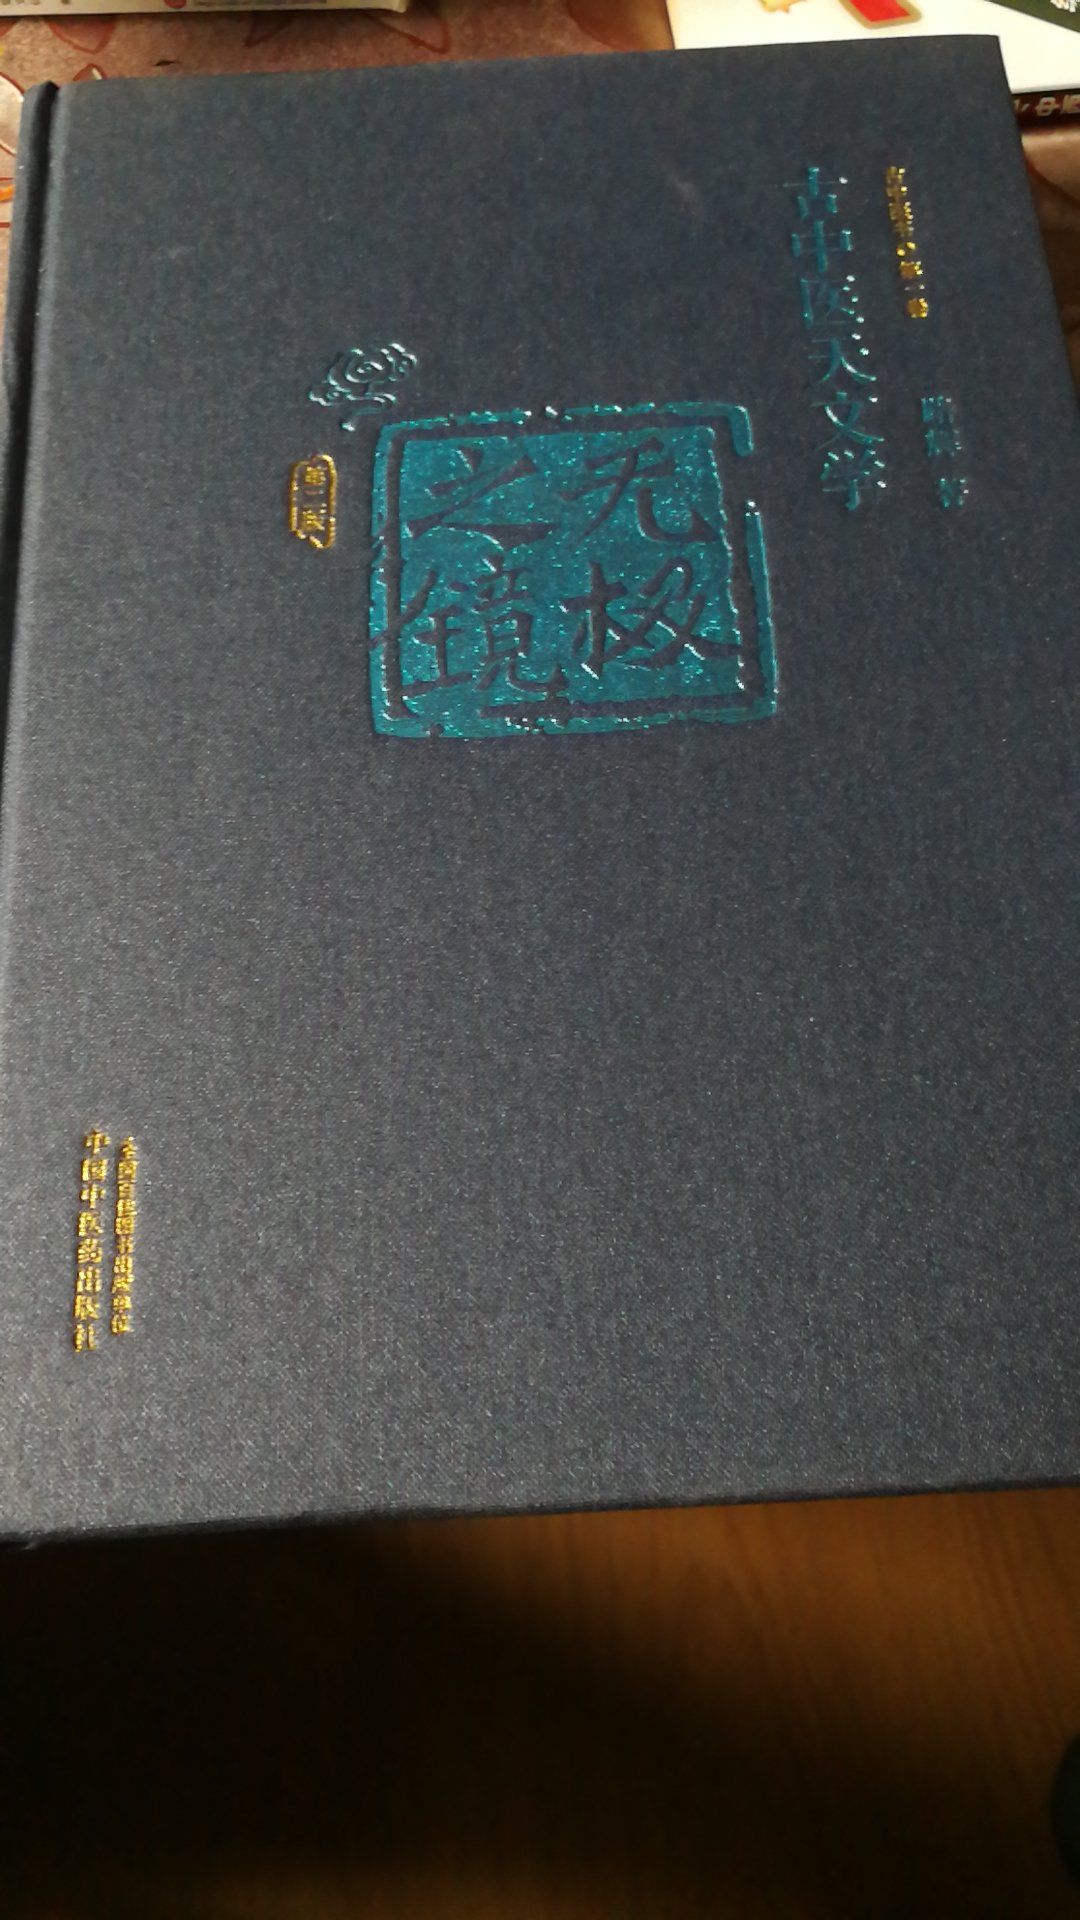 收到了该书，可以了解一些古中医天文学知识。